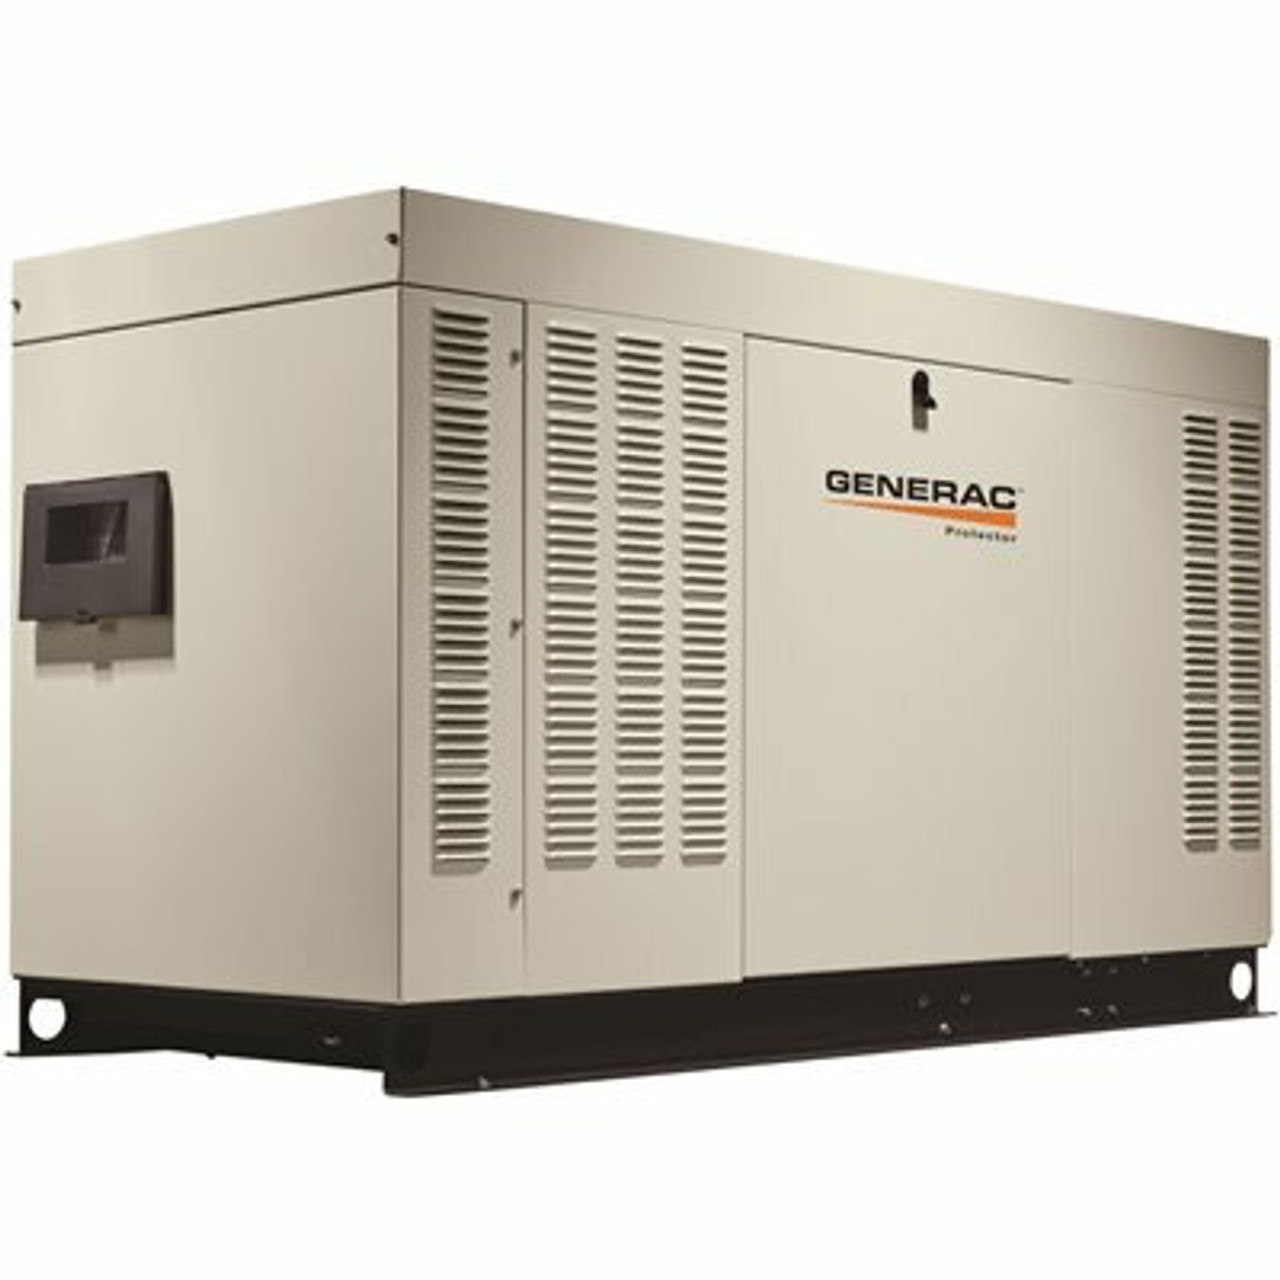 Generac 60,000-Watt 120-Volt/240-Volt Liquid Cooled Standby Generator 3-Phase With Aluminum Enclosure